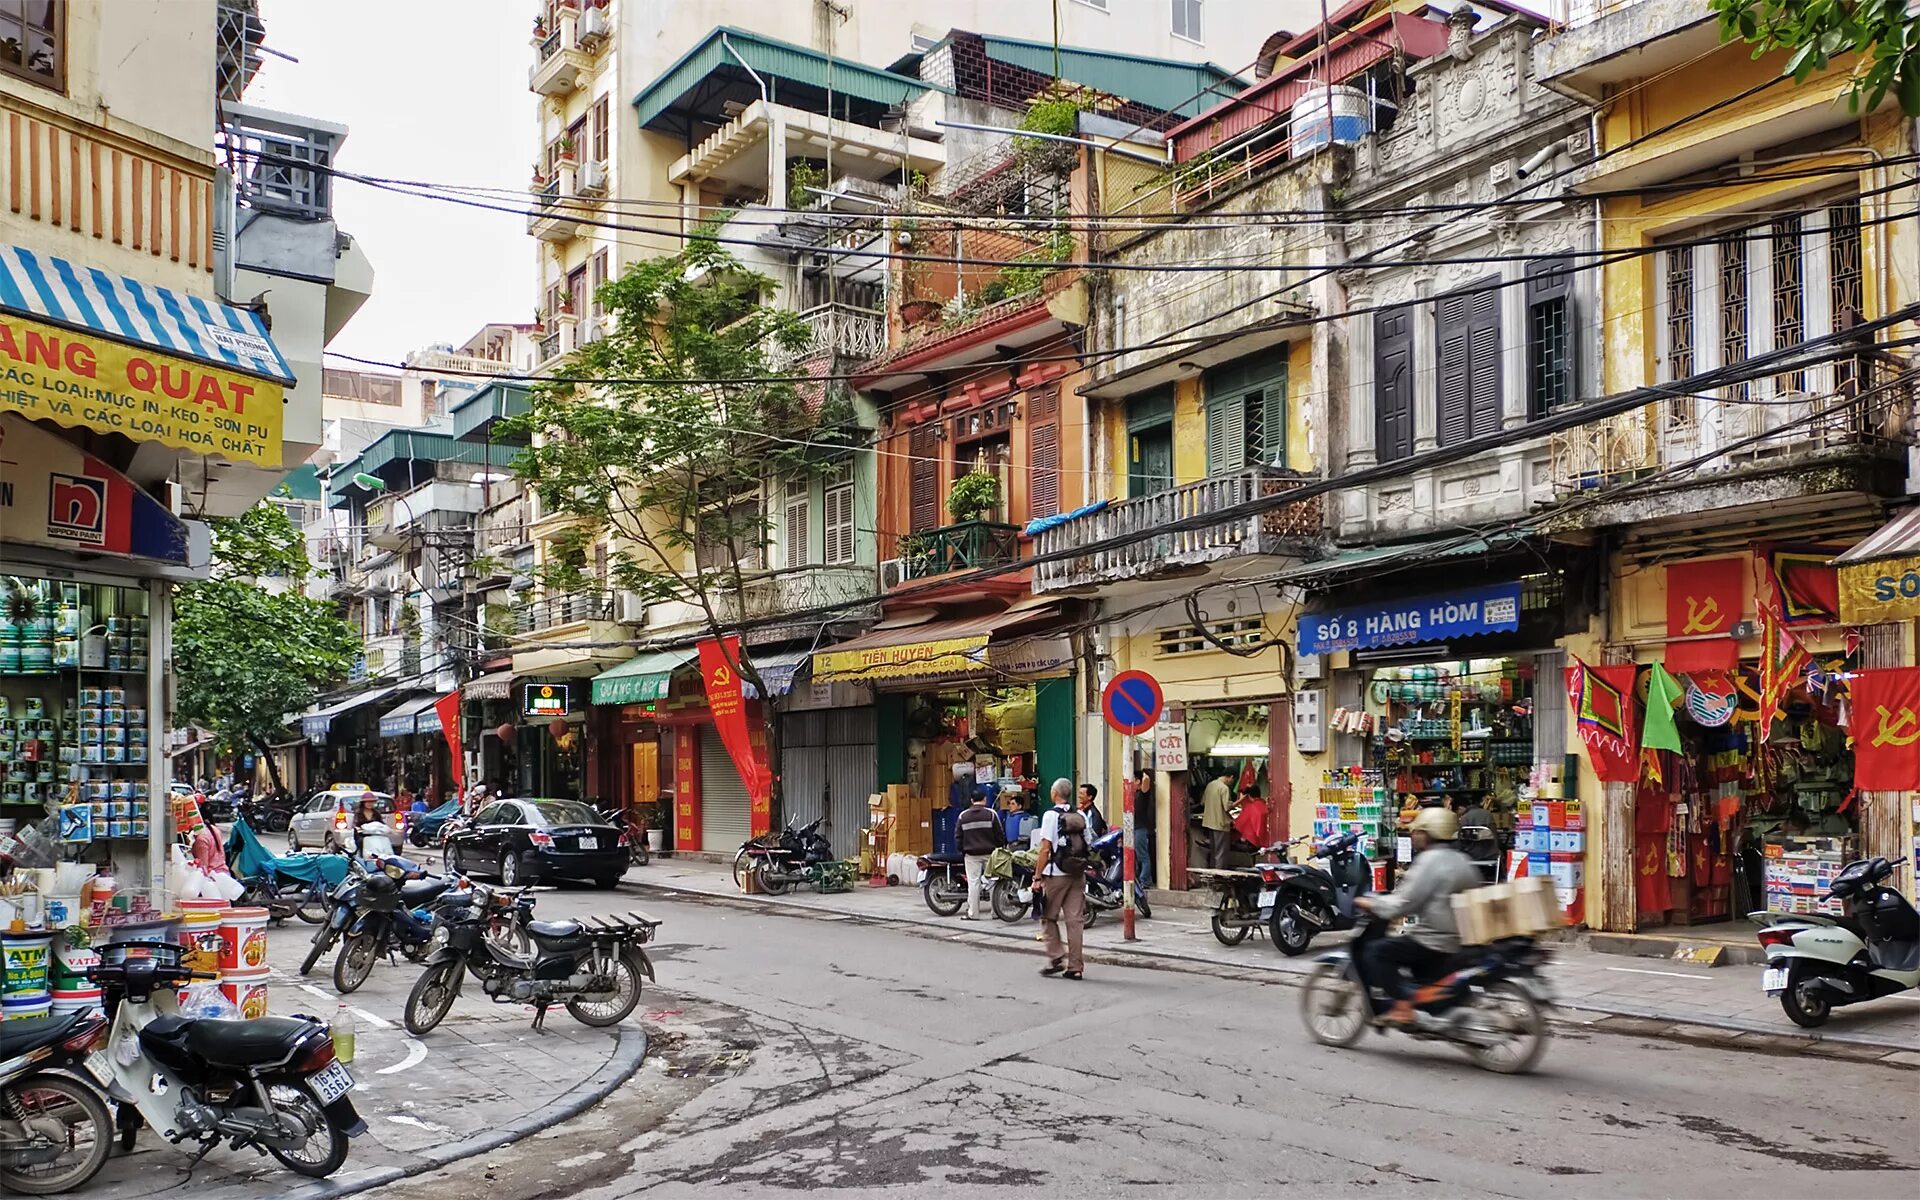 Купить в ханое. Столица Вьетнама Хошимин. Hanoi Вьетнам. Вьетнам Ханой улицы. Ханой старый квартал.